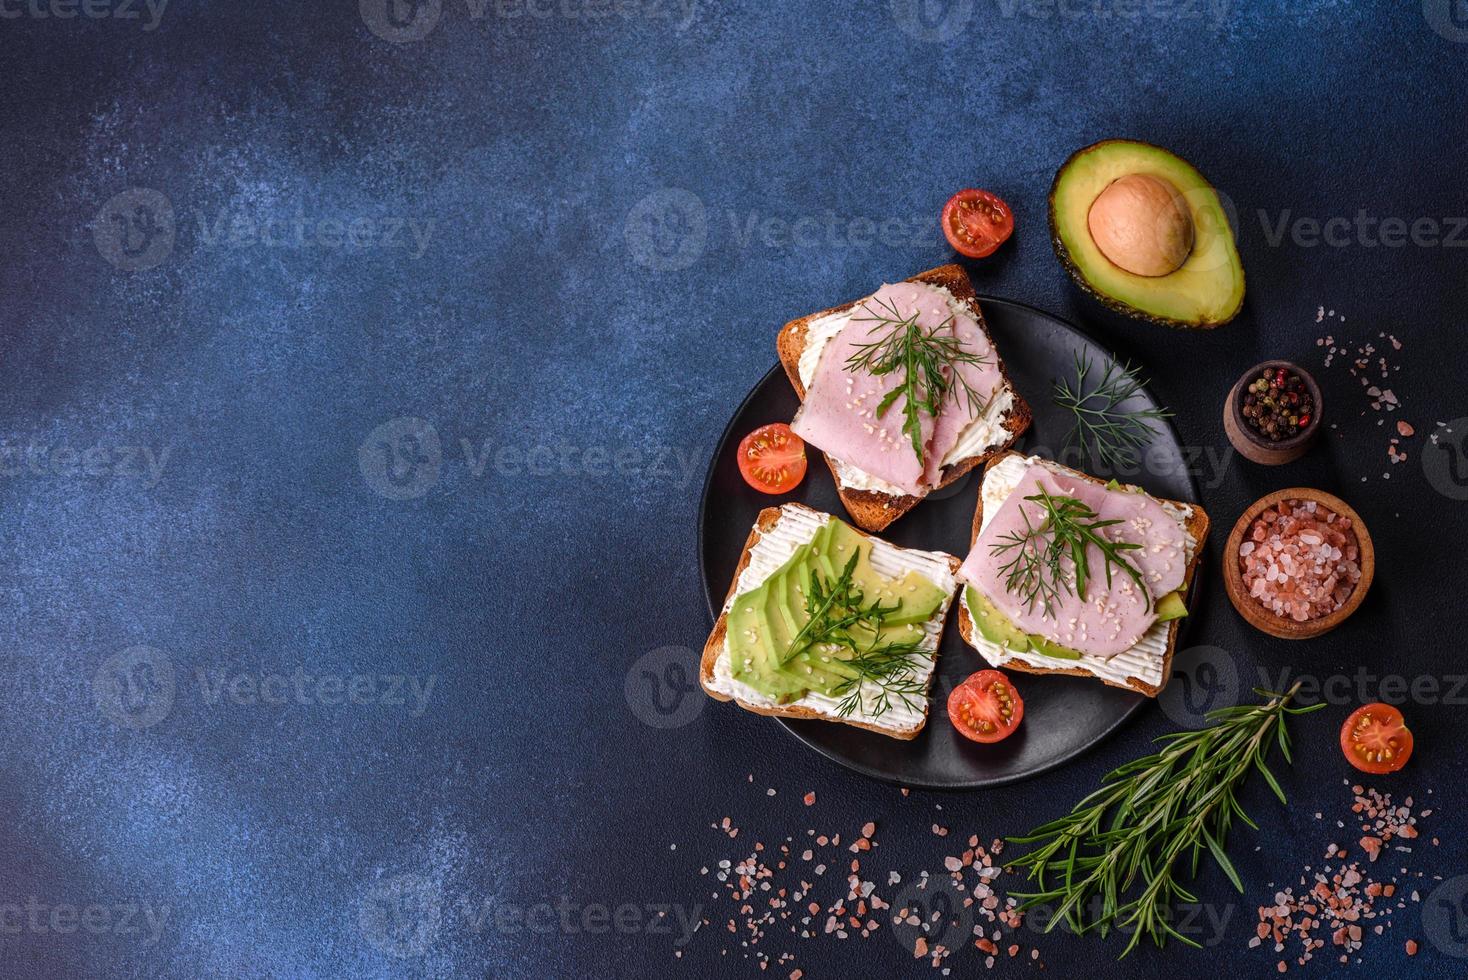 färsk, utsökt skinka, Smör, avokado och sesam frön smörgåsar på en trä- skärande styrelse foto